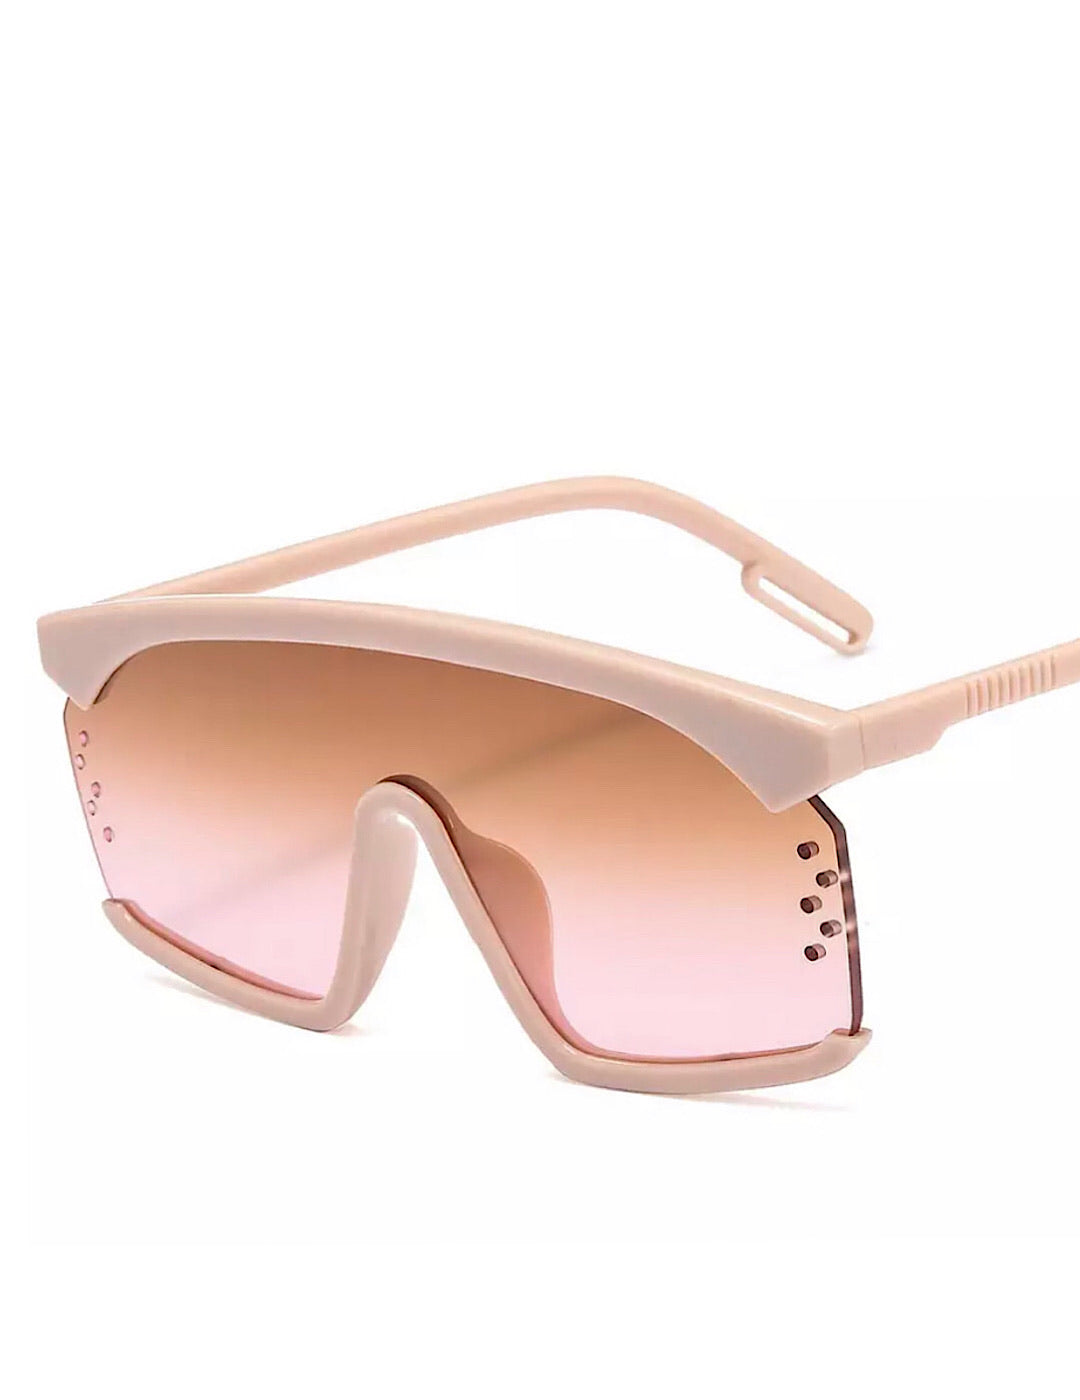 “Champagne” Lori Space Squared Sunglasses - SLAYBLÉU